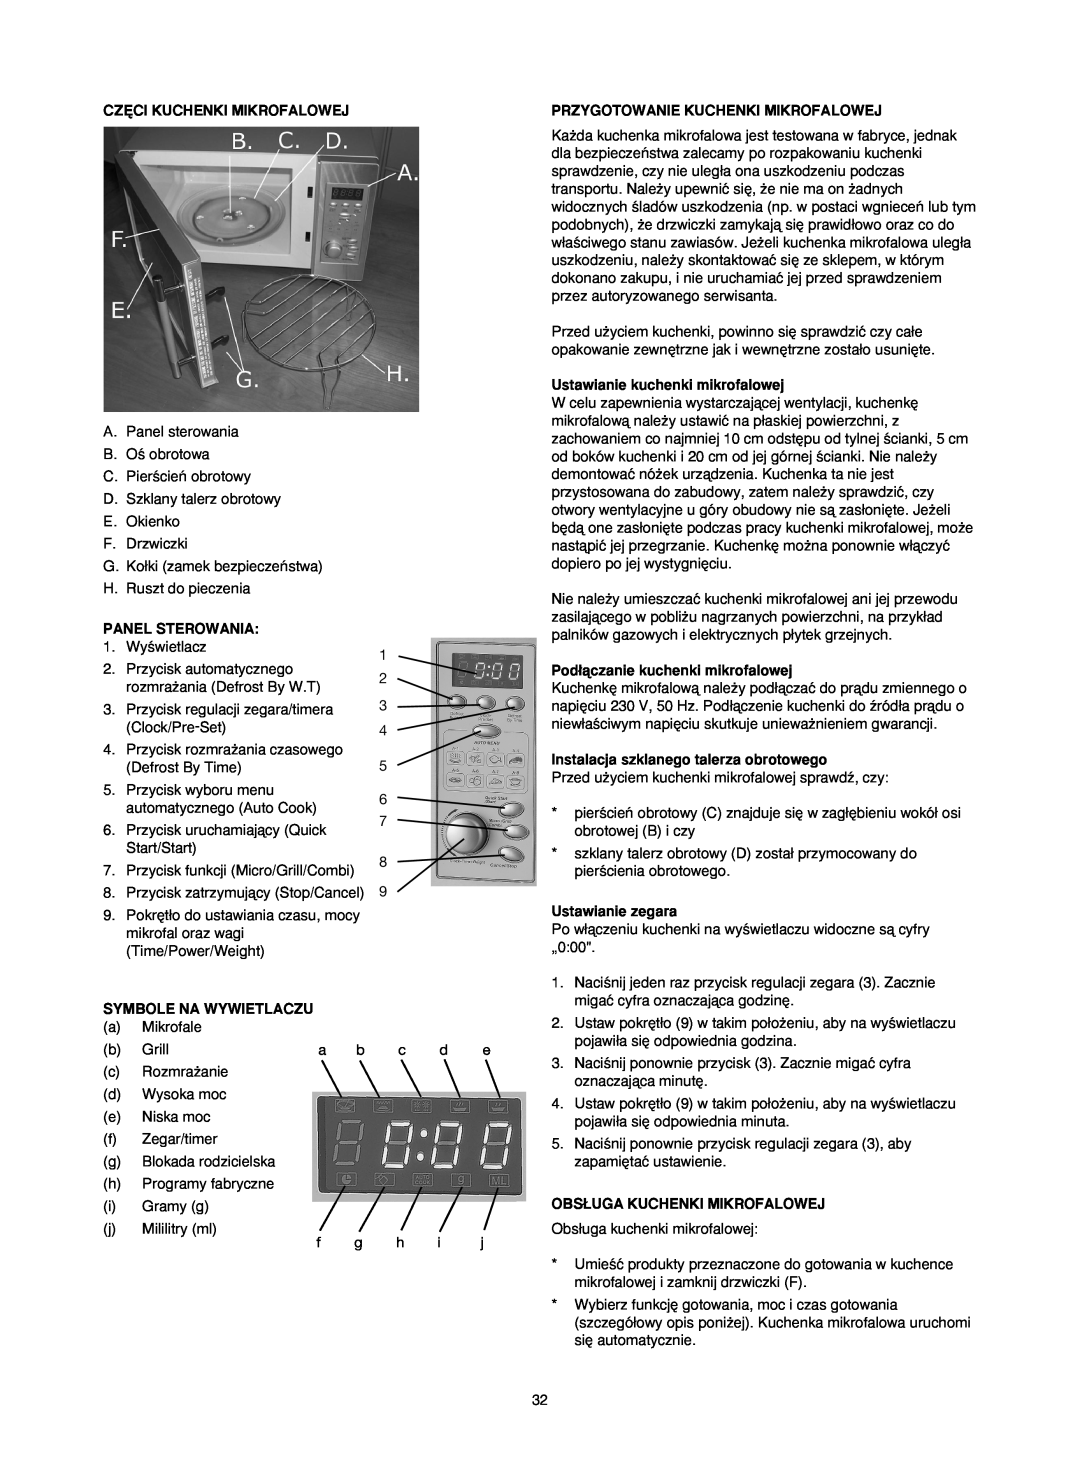 Melissa 753-089 Cz¢Ci Kuchenki Mikrofalowej, Przygotowanie Kuchenki Mikrofalowej, Panel Sterowania, Symbole Na Wywietlaczu 